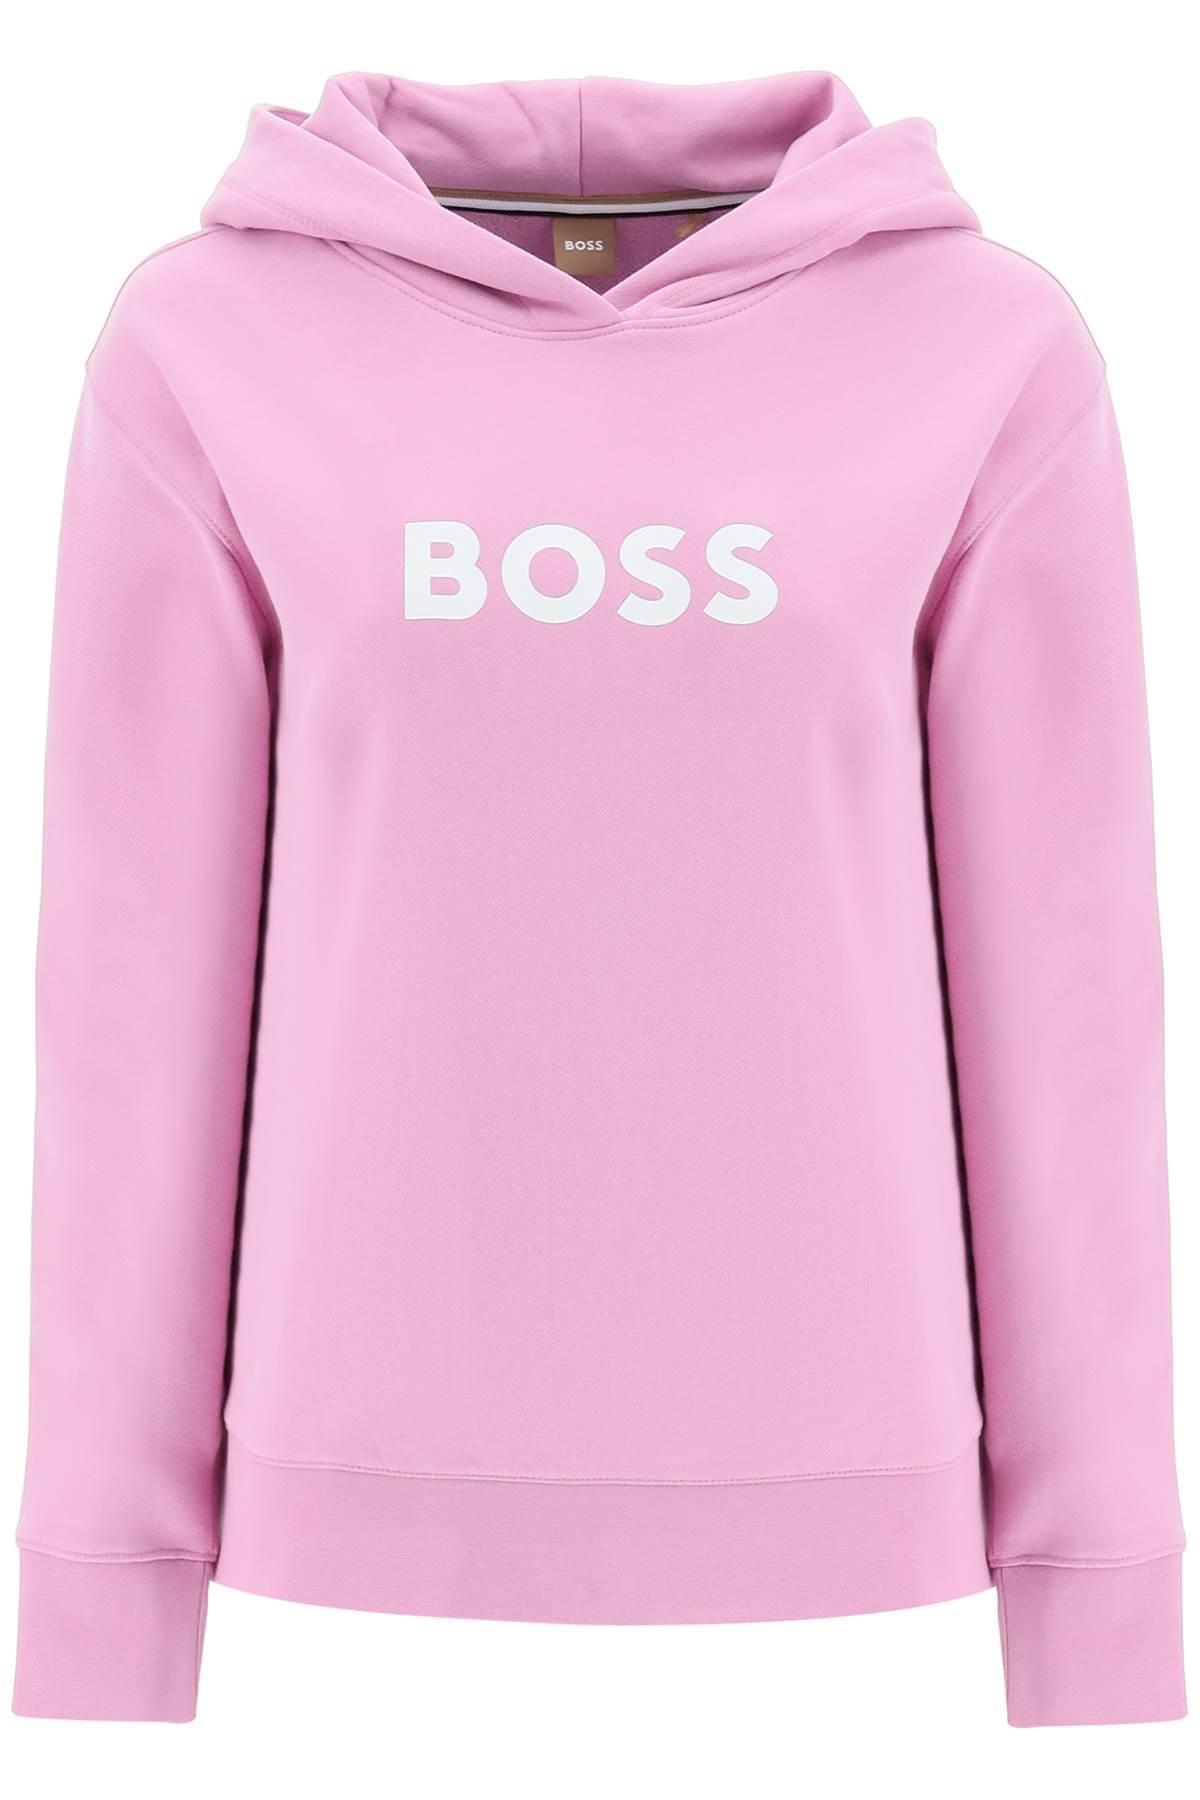 BOSS by HUGO BOSS Logo Printed Hoodie in Pink | Lyst